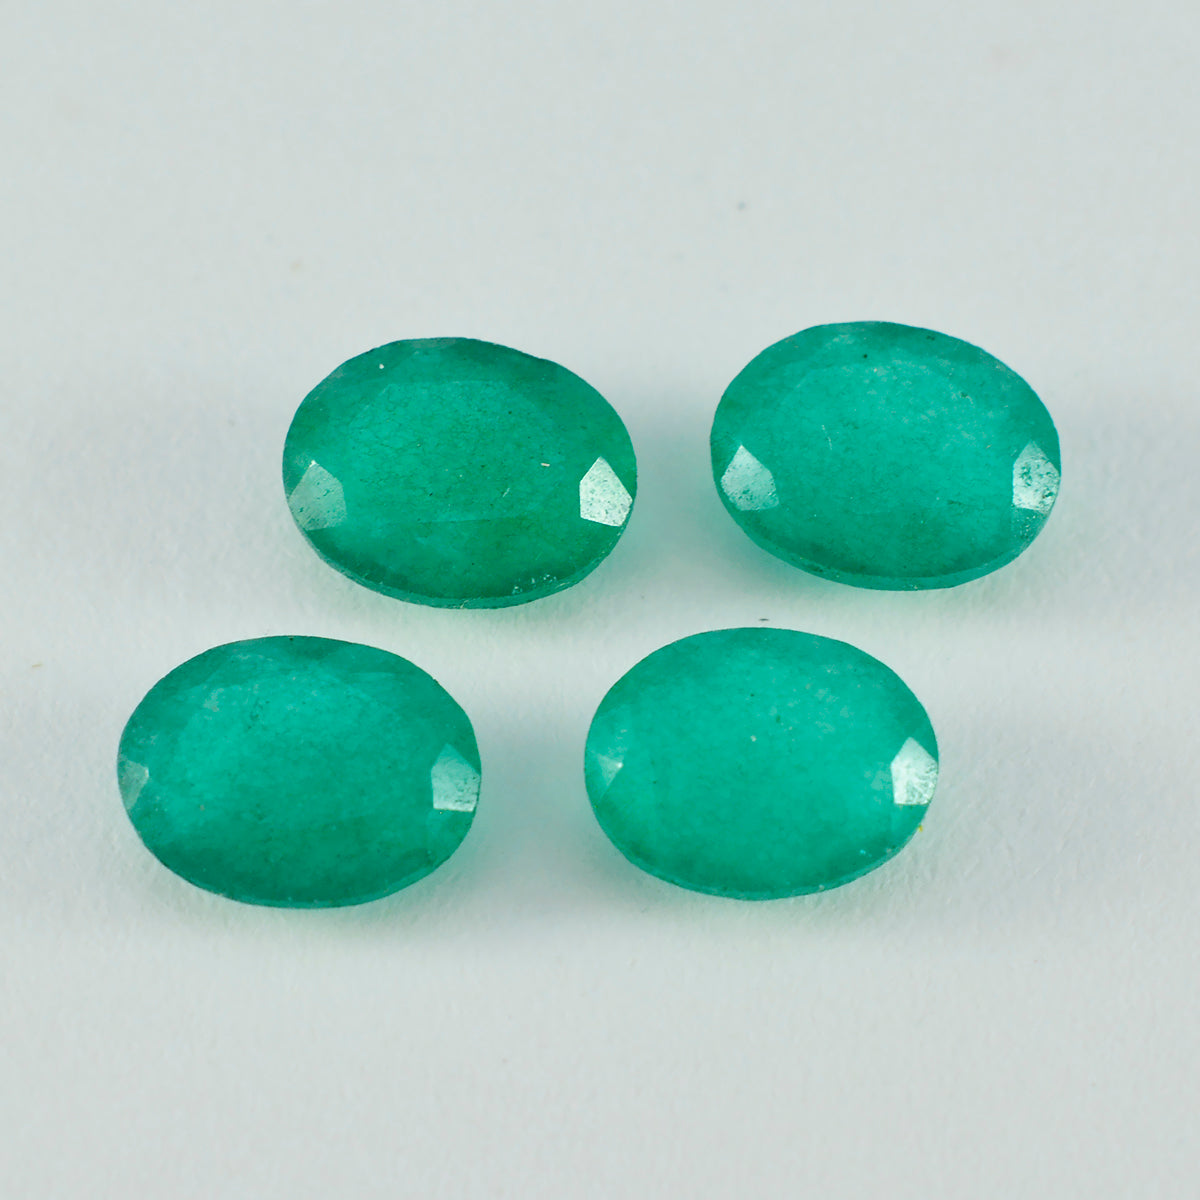 Riyogems 1 Stück echter grüner Jaspis, facettiert, 10 x 14 mm, ovale Form, lose Edelsteine von hervorragender Qualität